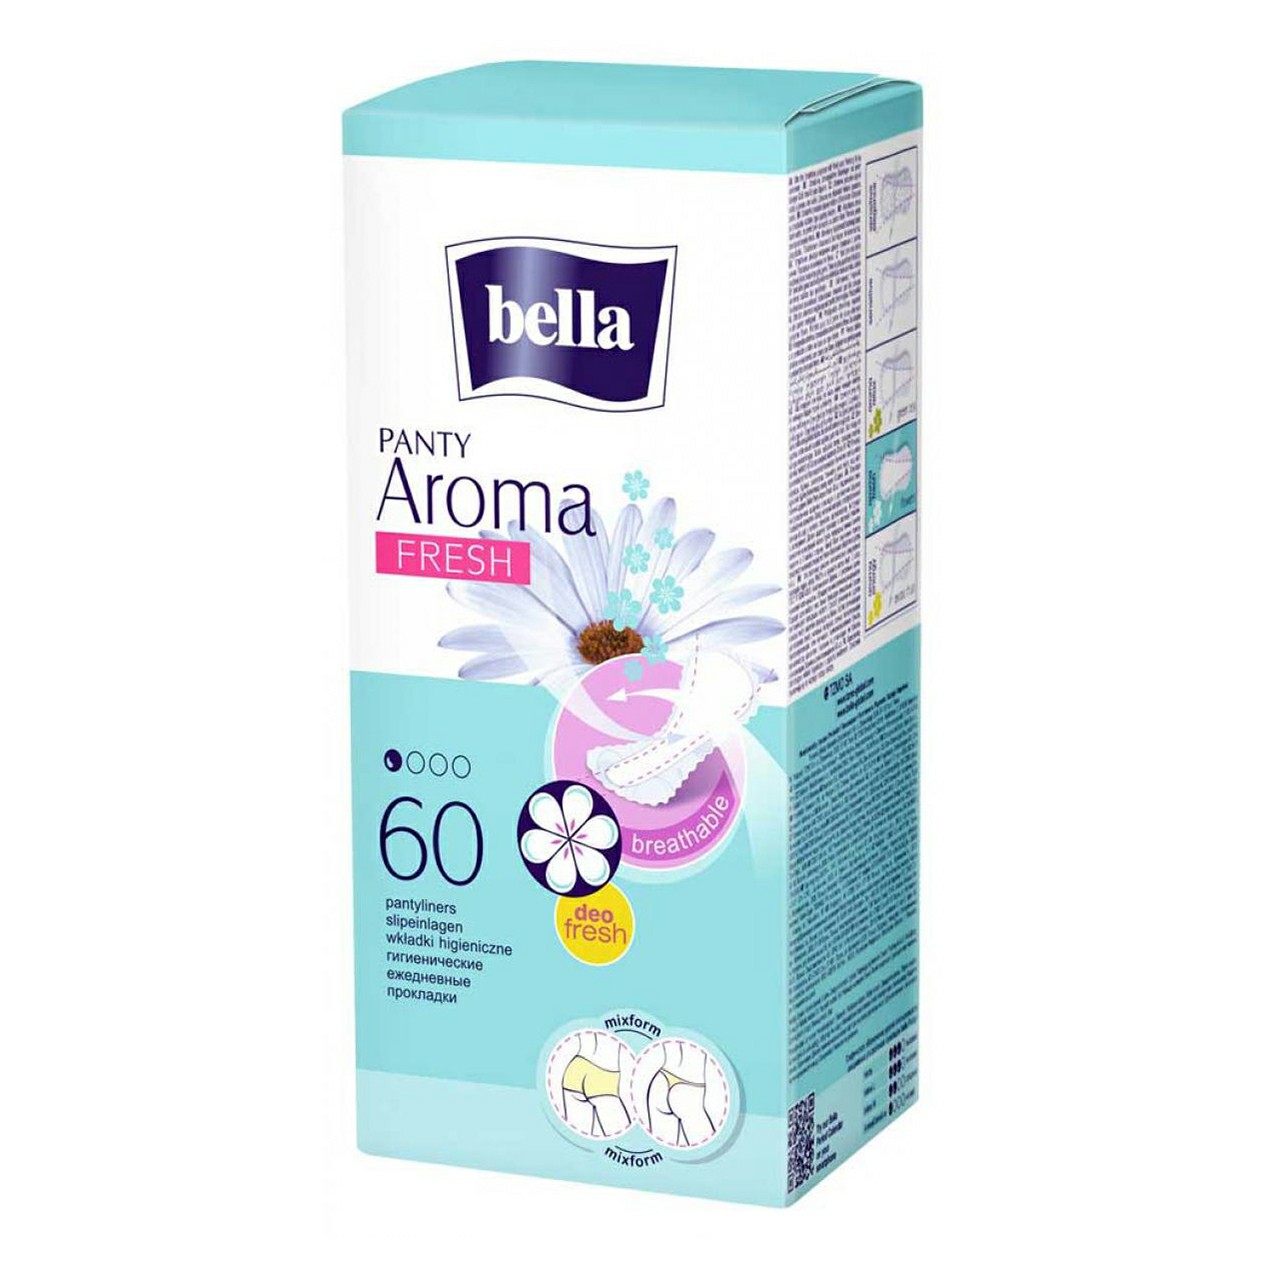 Прокладки ежедневные Bella Panty Aroma fresh 60 шт. прокладки ежедневные bella panty sensitive 20шт х 6 уп